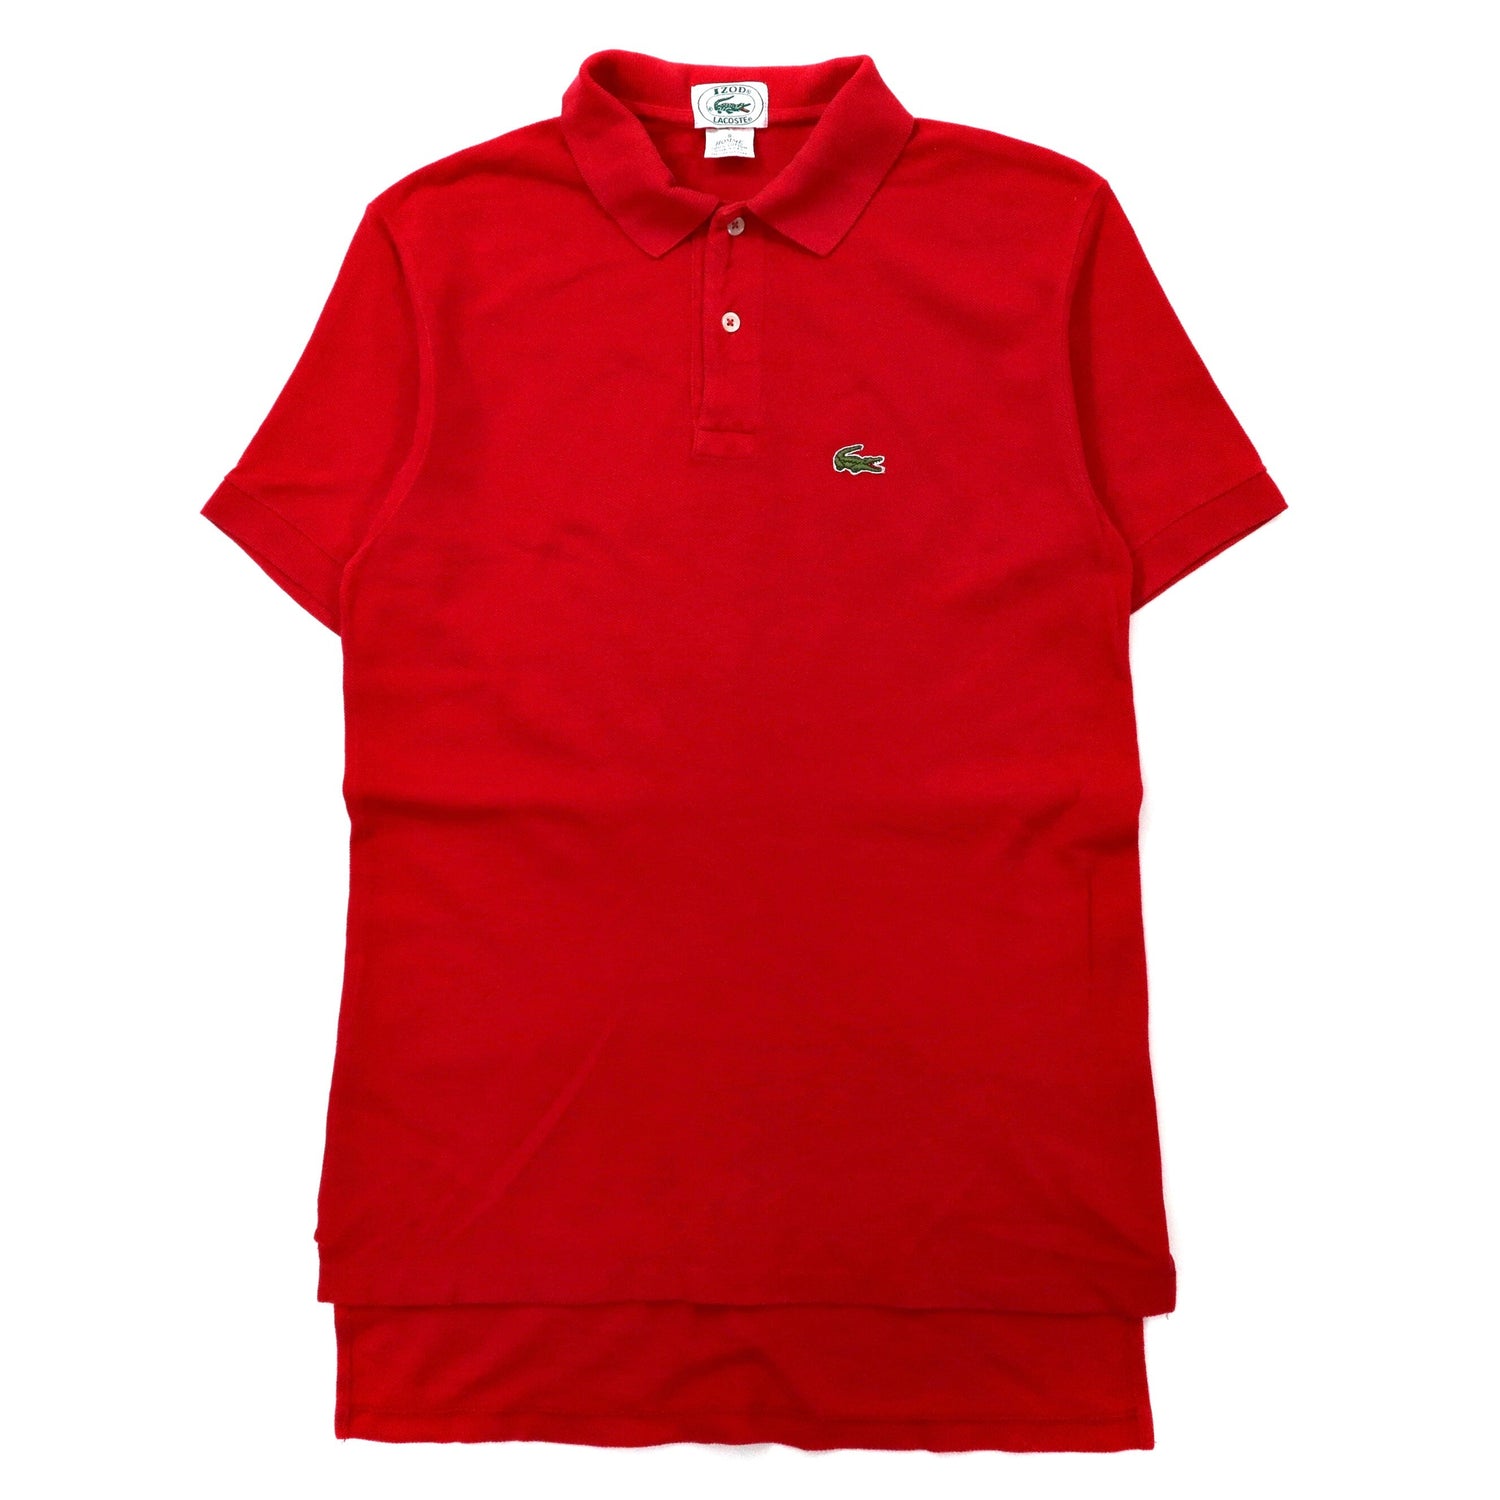 USA製 IZOD LACOSTE ポロシャツ S レッド コットン ワンポイントロゴ